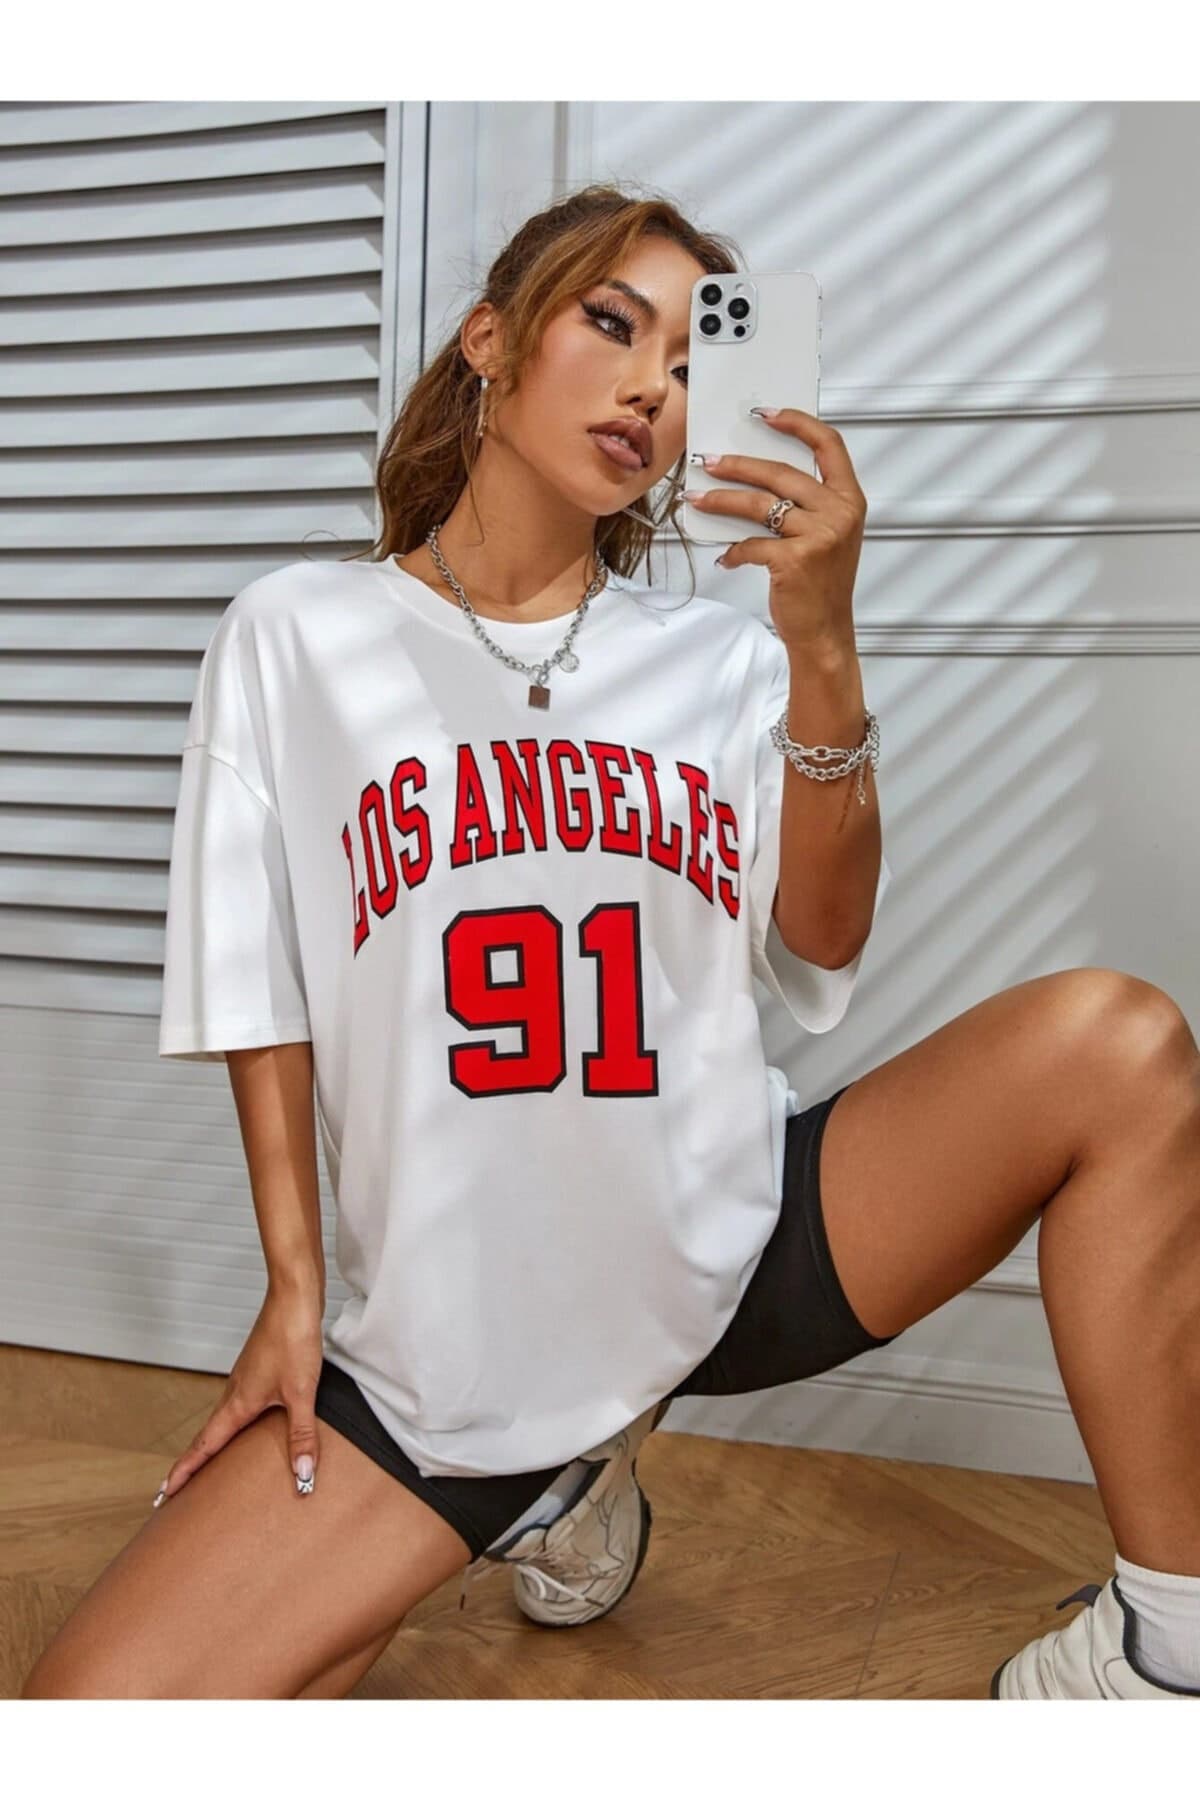 Los ANGELES 91 T SHIRT OVERSIZE Women's Shirt Short Sleeve 